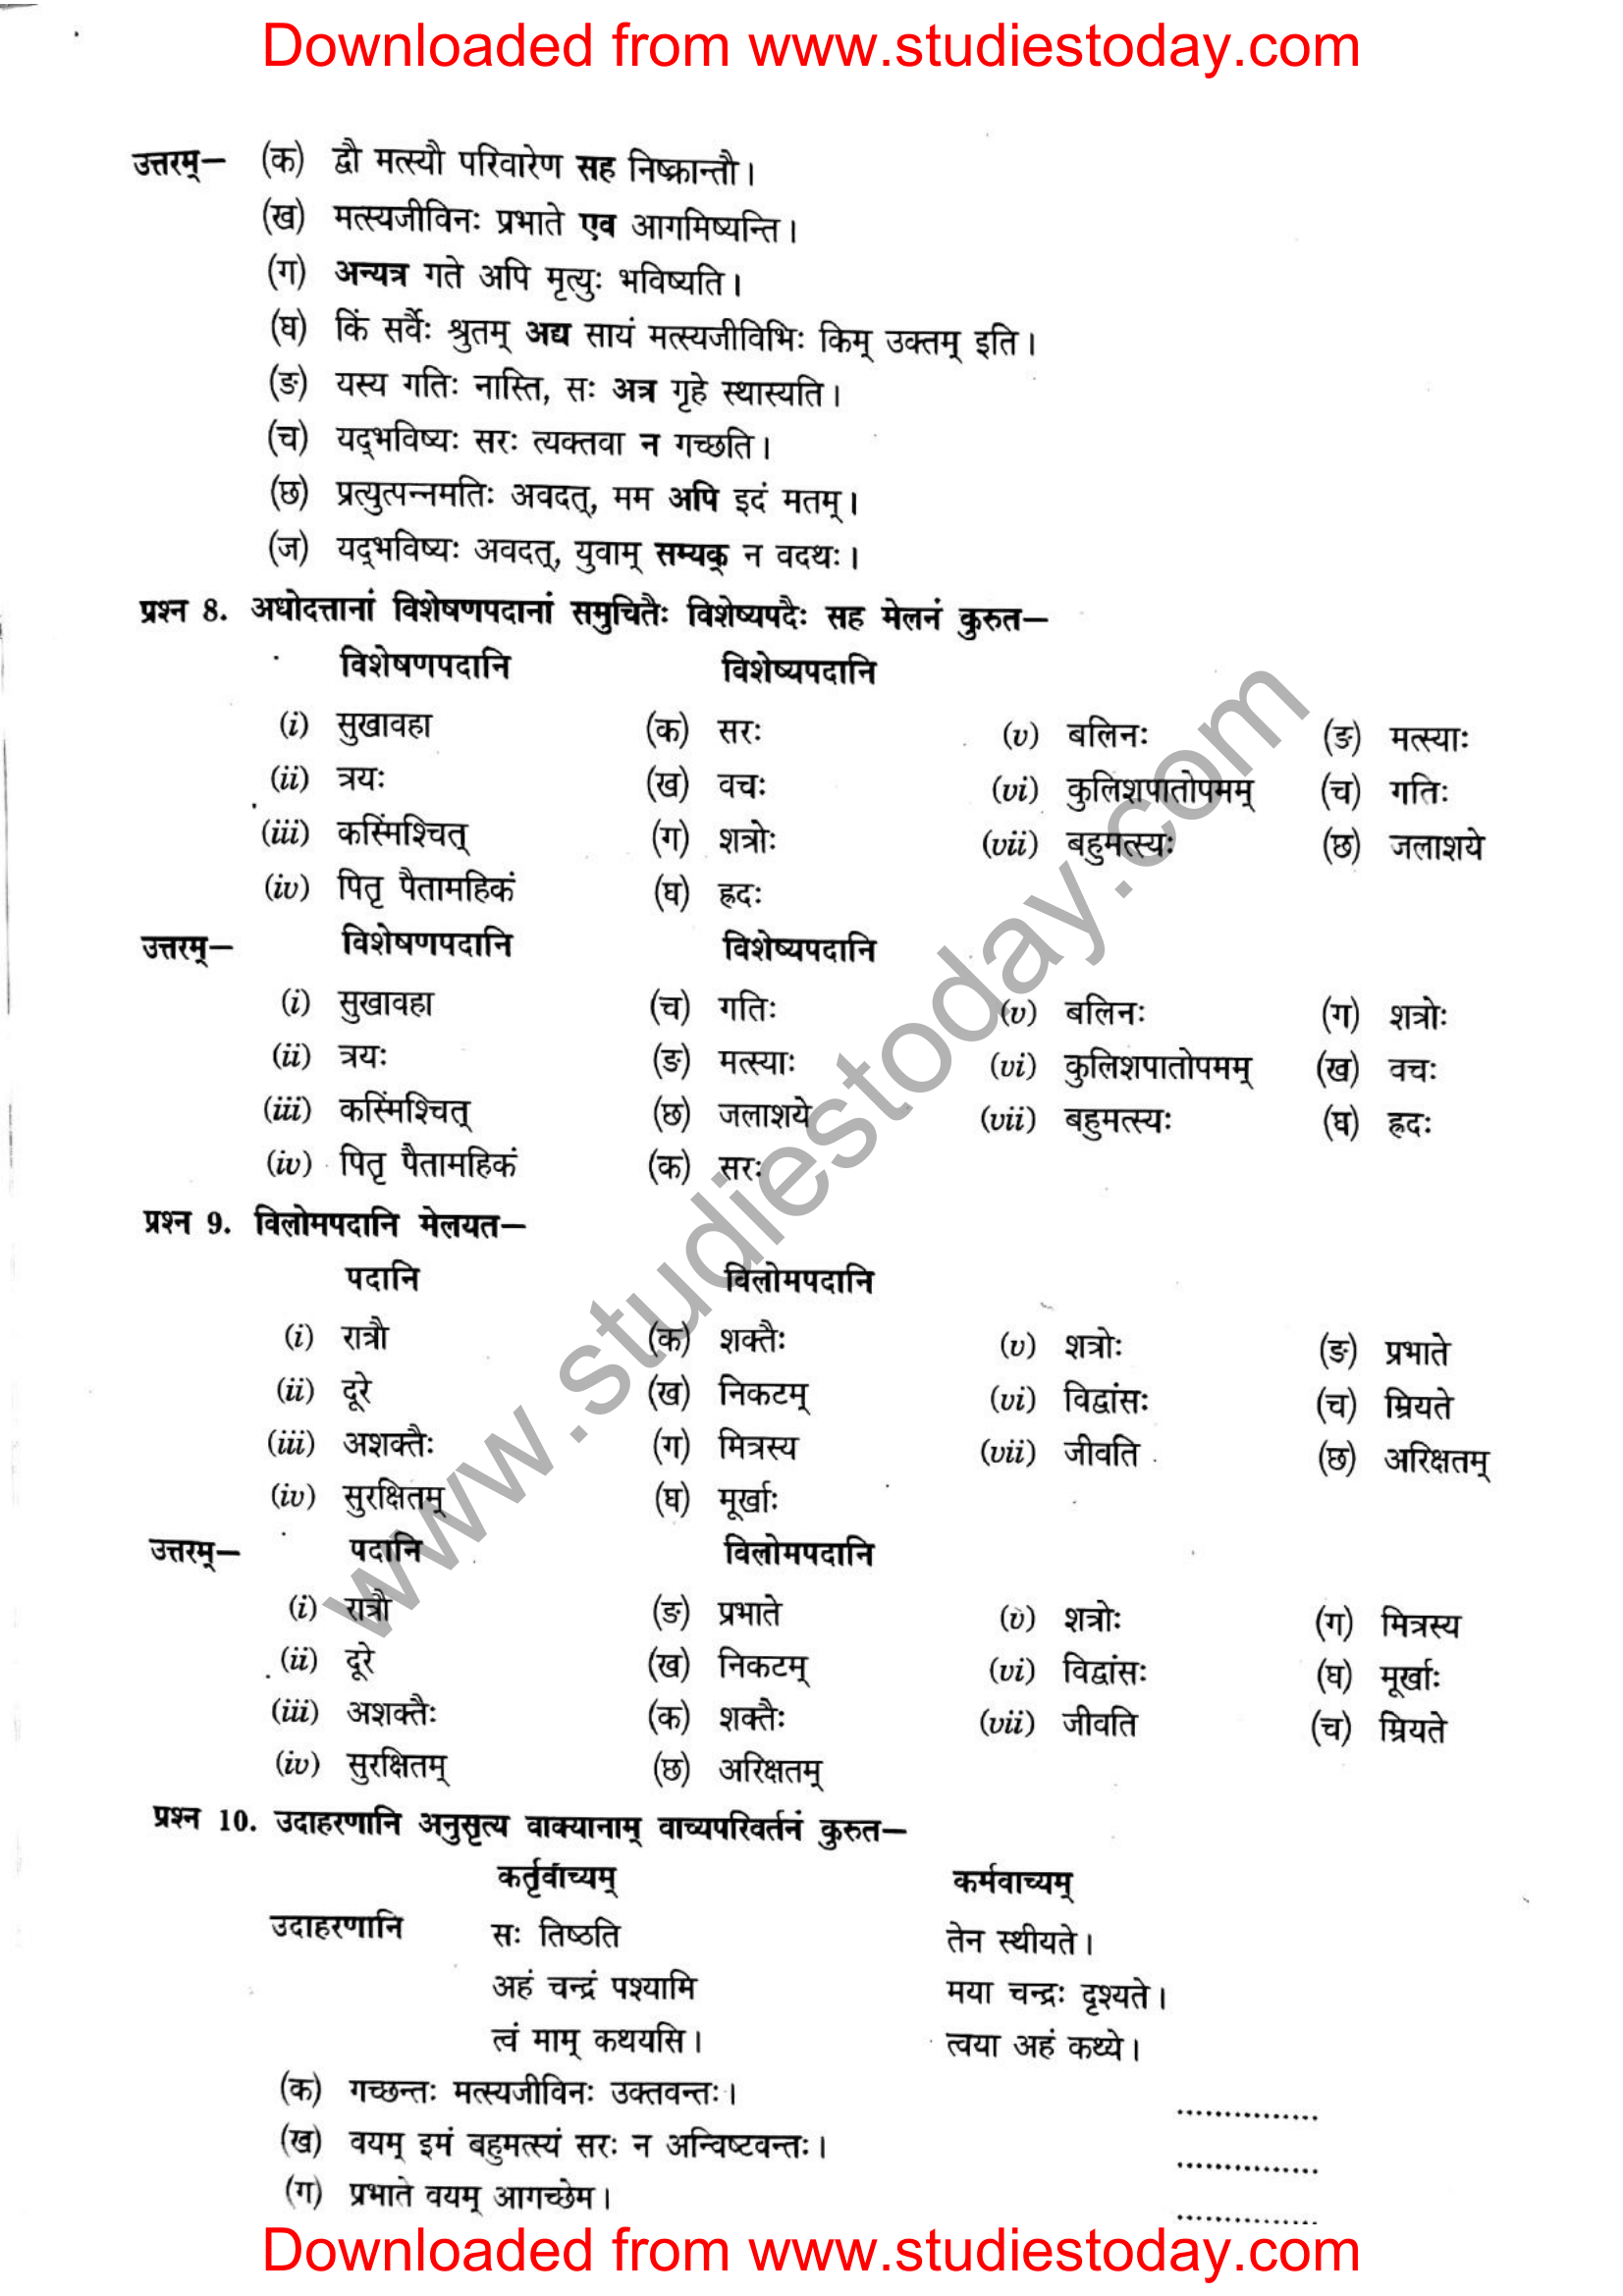 ncert-solutions-class-12-sanskrit-ritikia-chapter-4-09